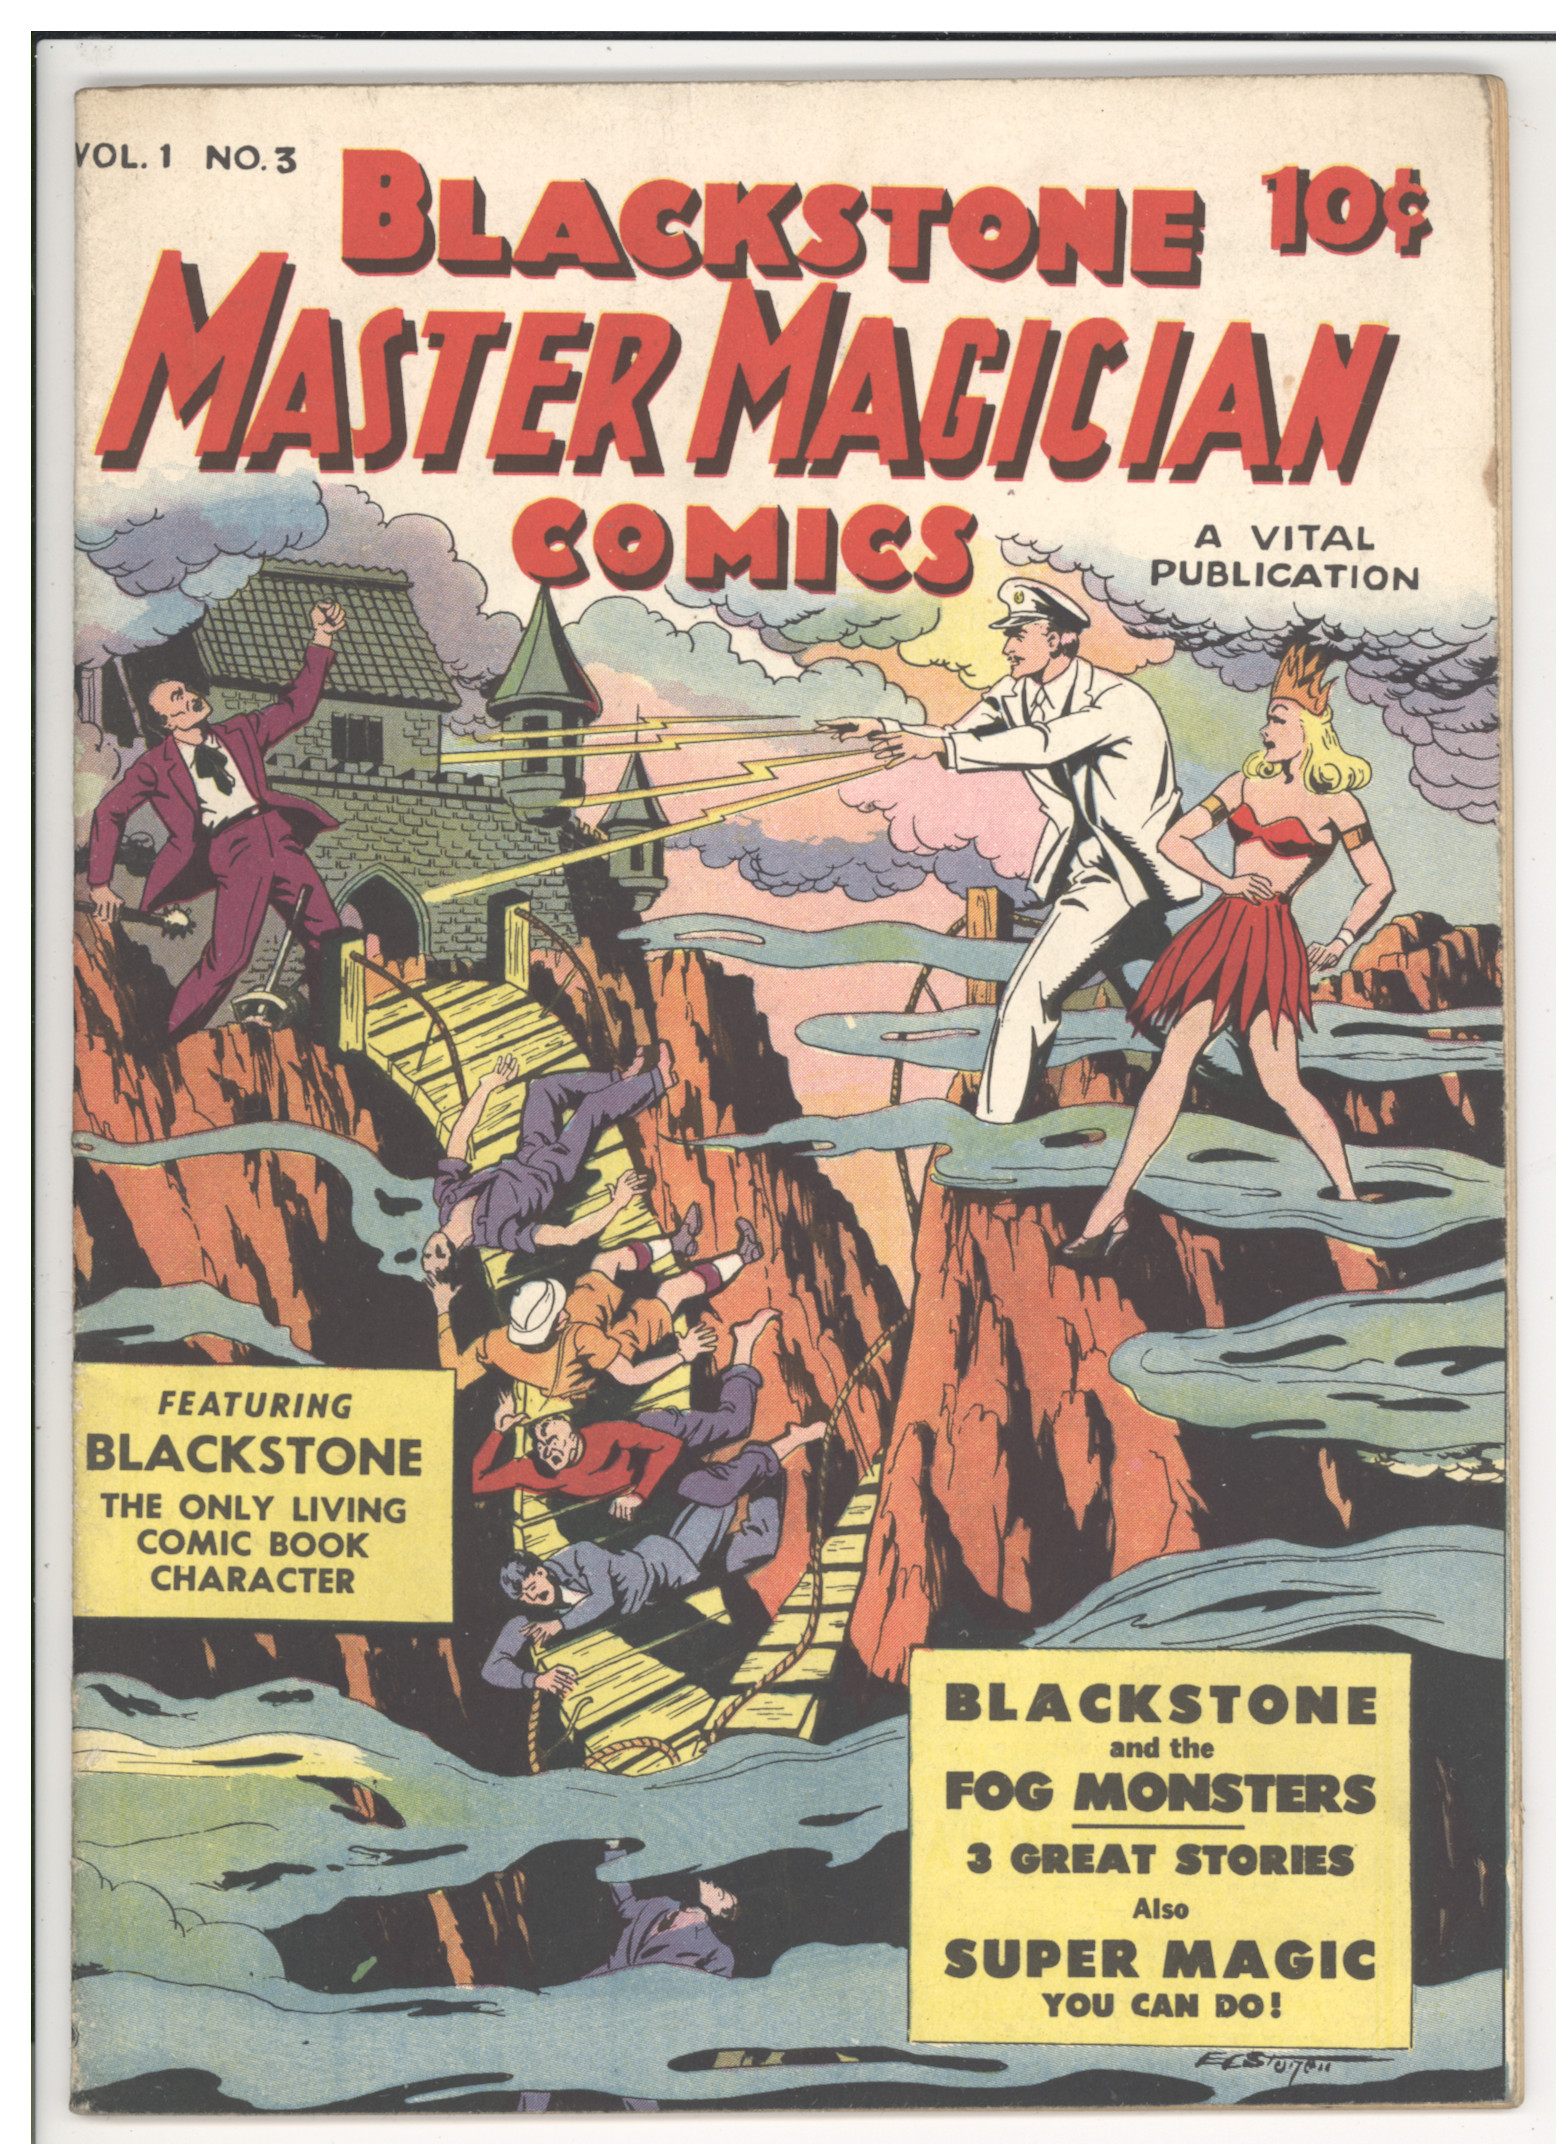 Blackstone Master Magician Comics #3 front